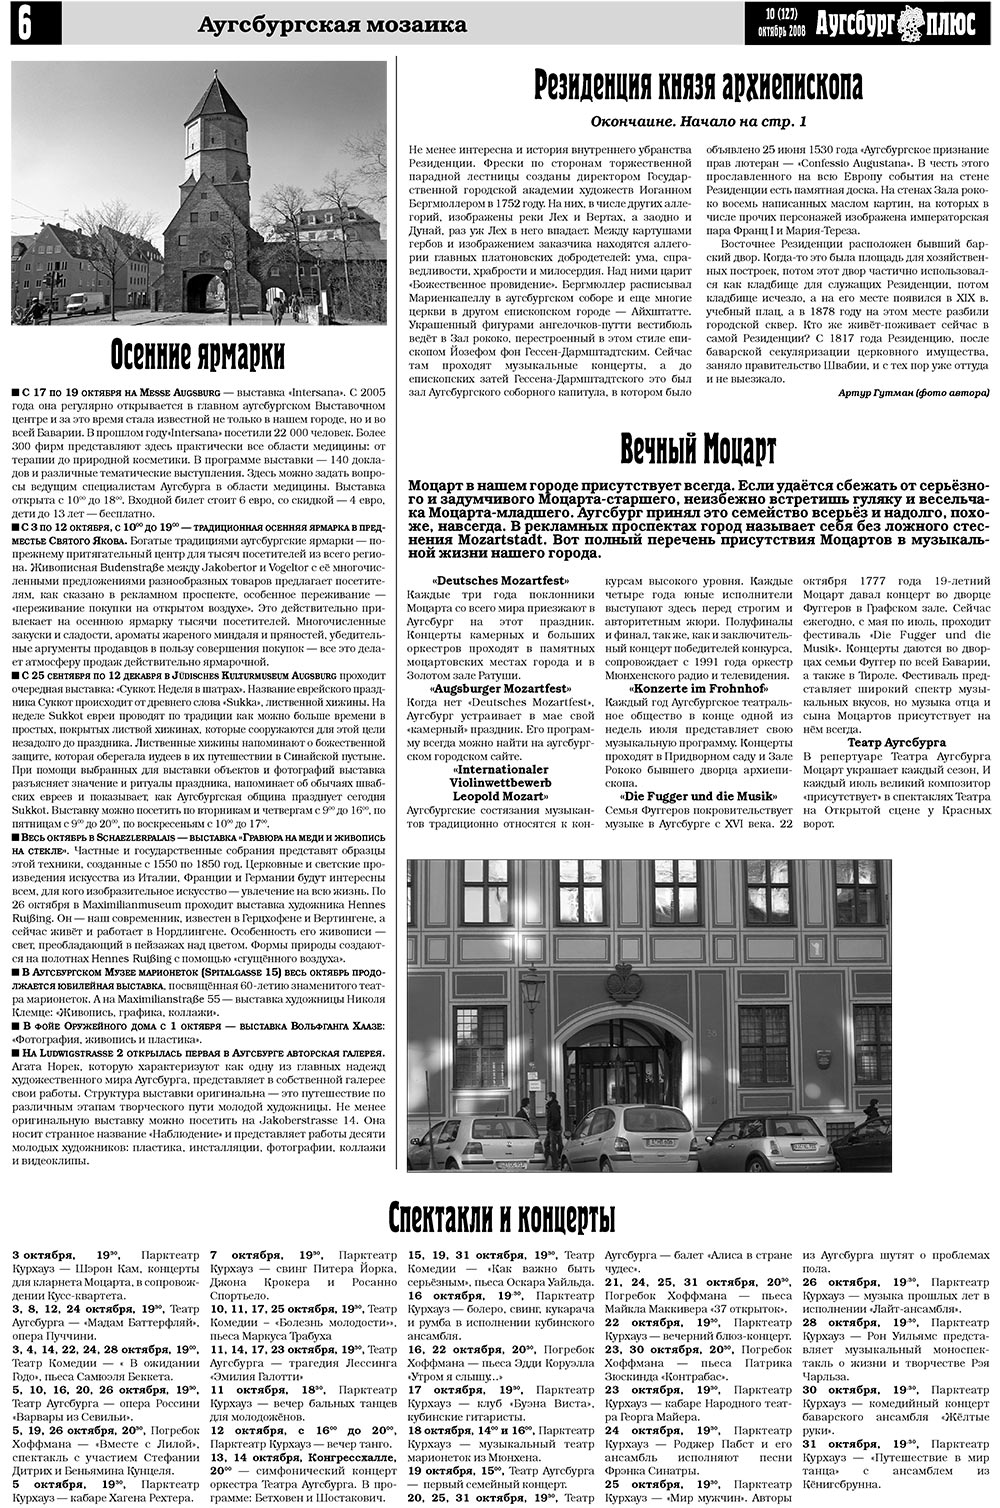 Германия плюс (газета). 2008 год, номер 10, стр. 8